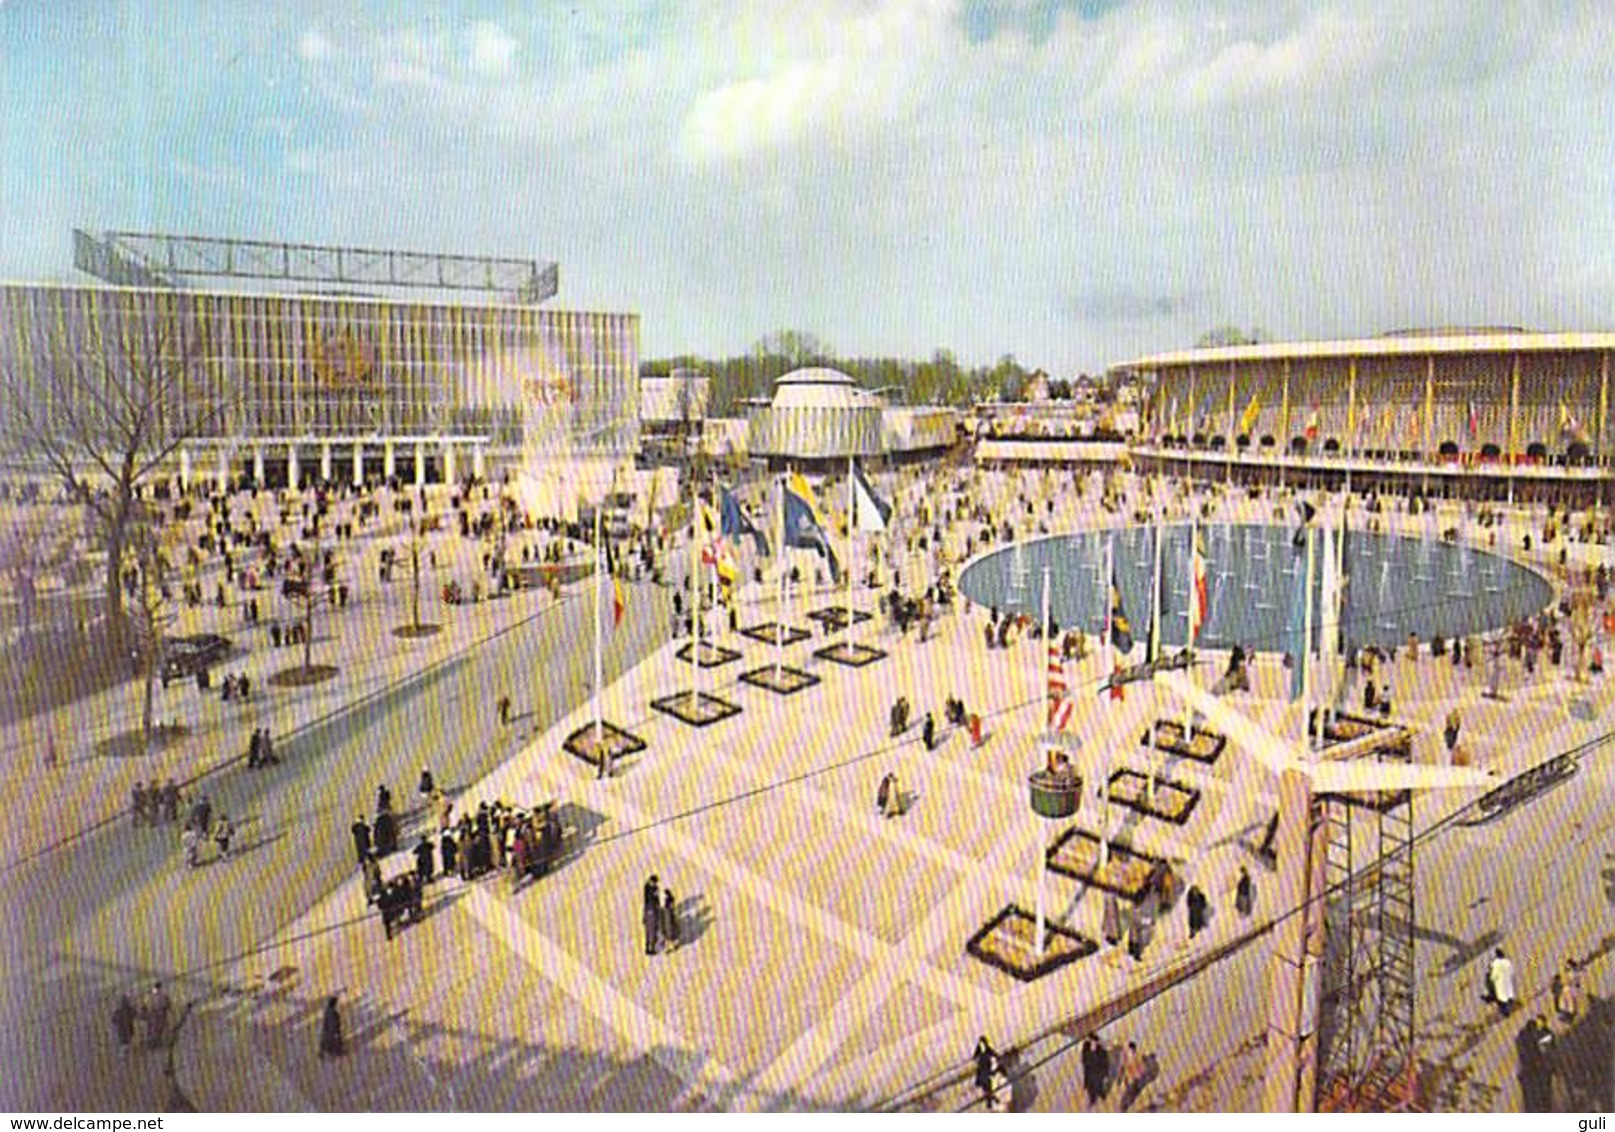 Belgique > BRUXELLES  (Laeken) Exposition Universelle 1958- Lot de 19 cartes cpsm, voir scan R / V des 19 cartes